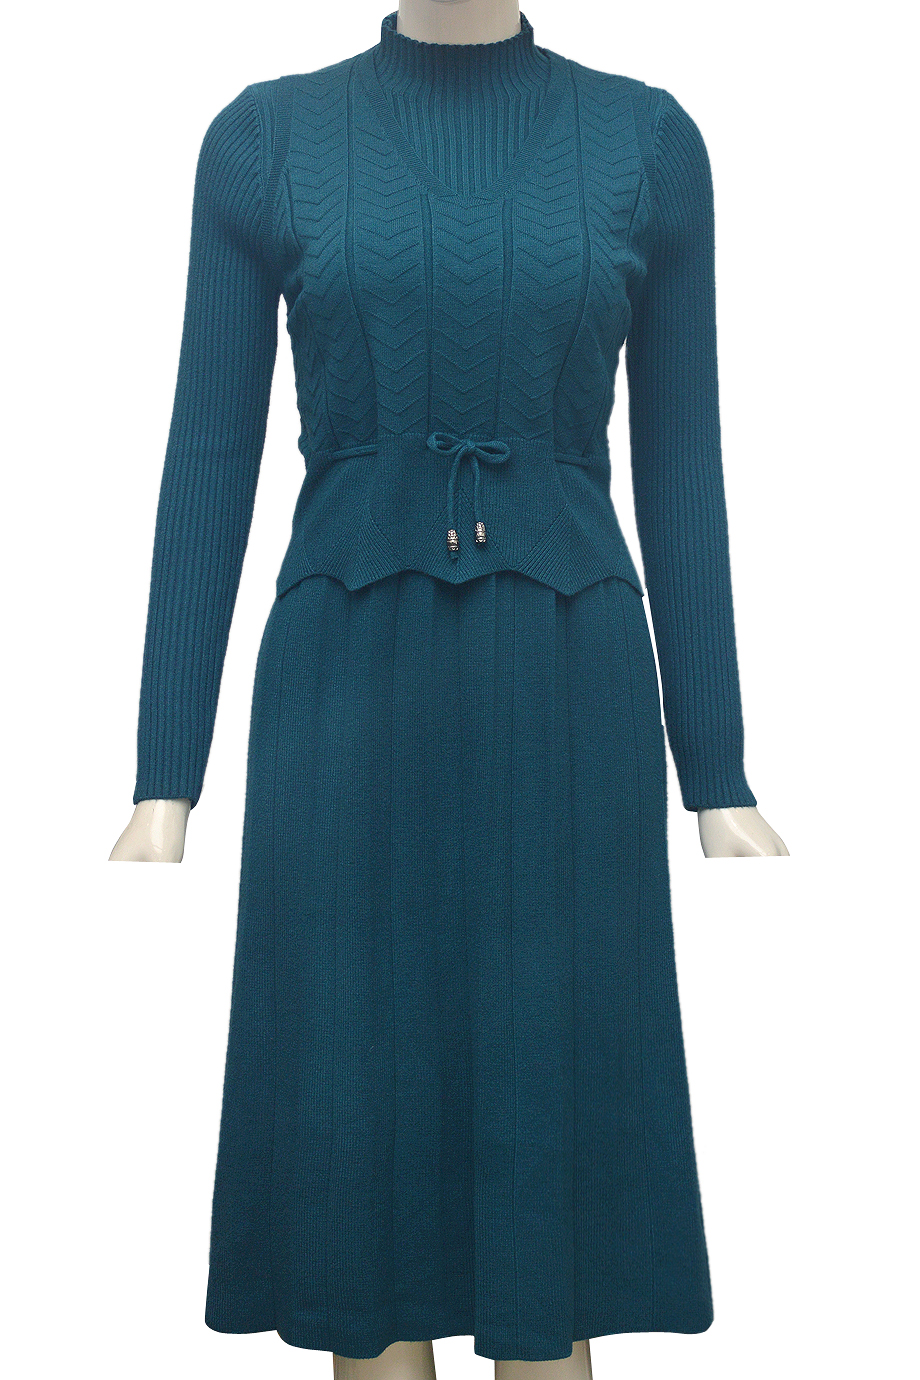 Mẫu đầm xòe xếp ly vạt lệch màu xanh thời trang cho nàng công sở TV1523 |  Váy hàng ngày, Trang phục các sao, Thời trang